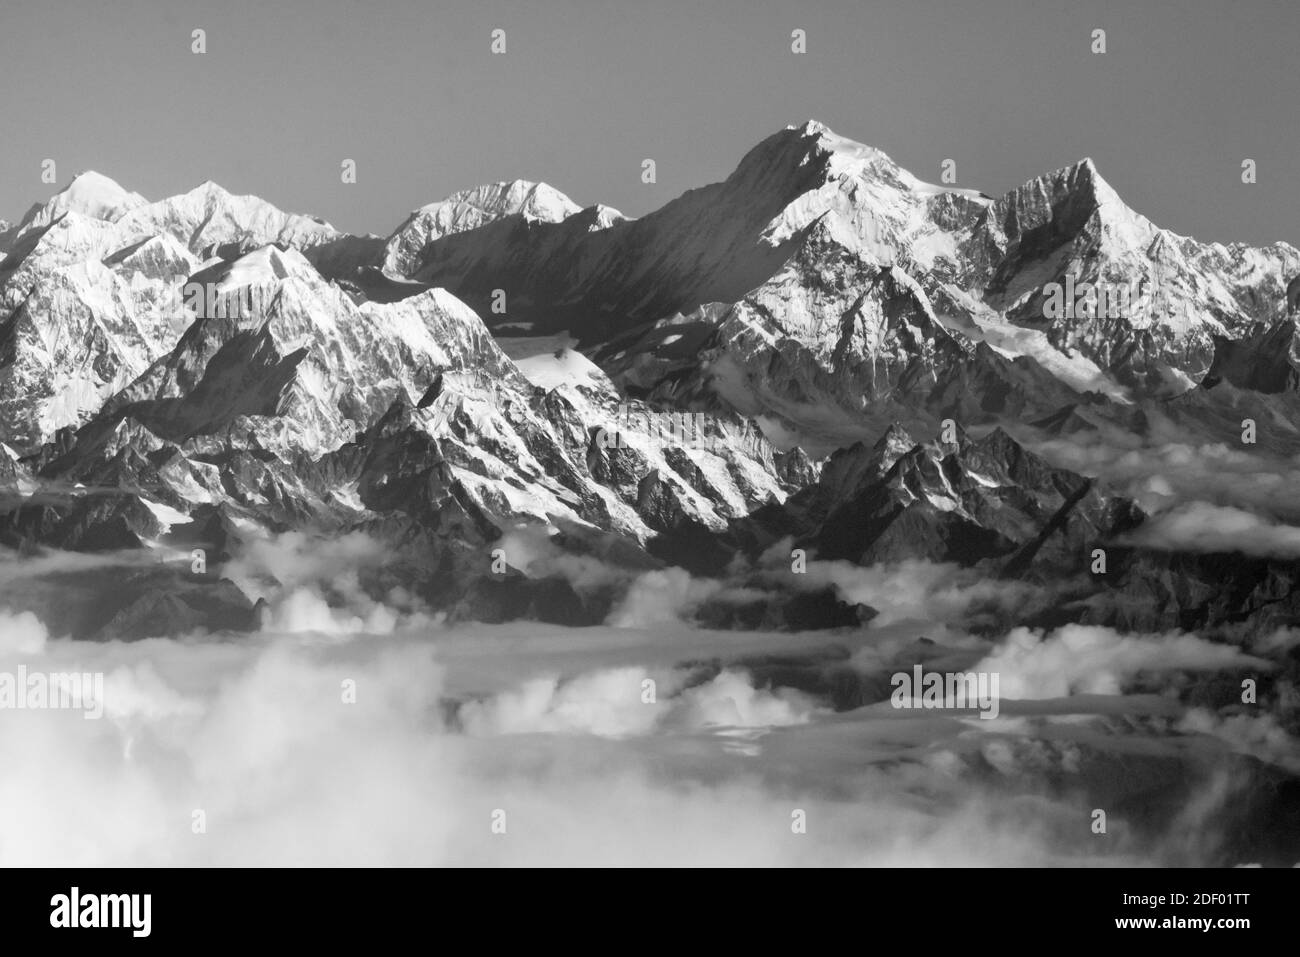 Monte Everest (8848m) en el Himalaya por encima de las nubes, Nepal Foto de stock